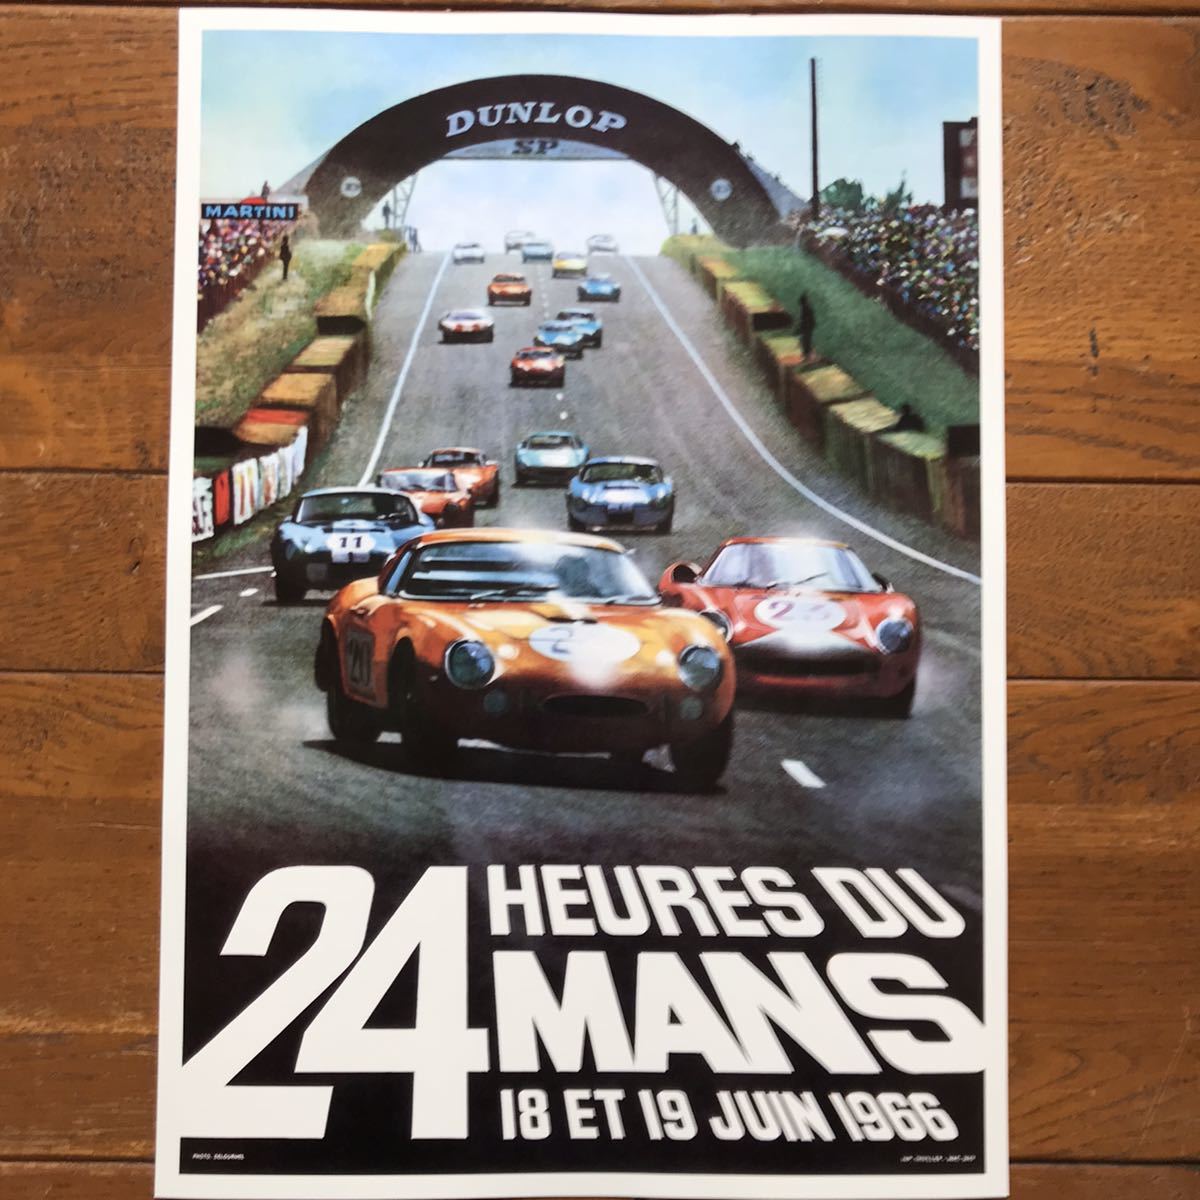 ポスター★1966年 ル・マン24時間レース ★24 Heures du Mans/ユノディエール/ポルシェ/フェラーリvsフォード_画像7